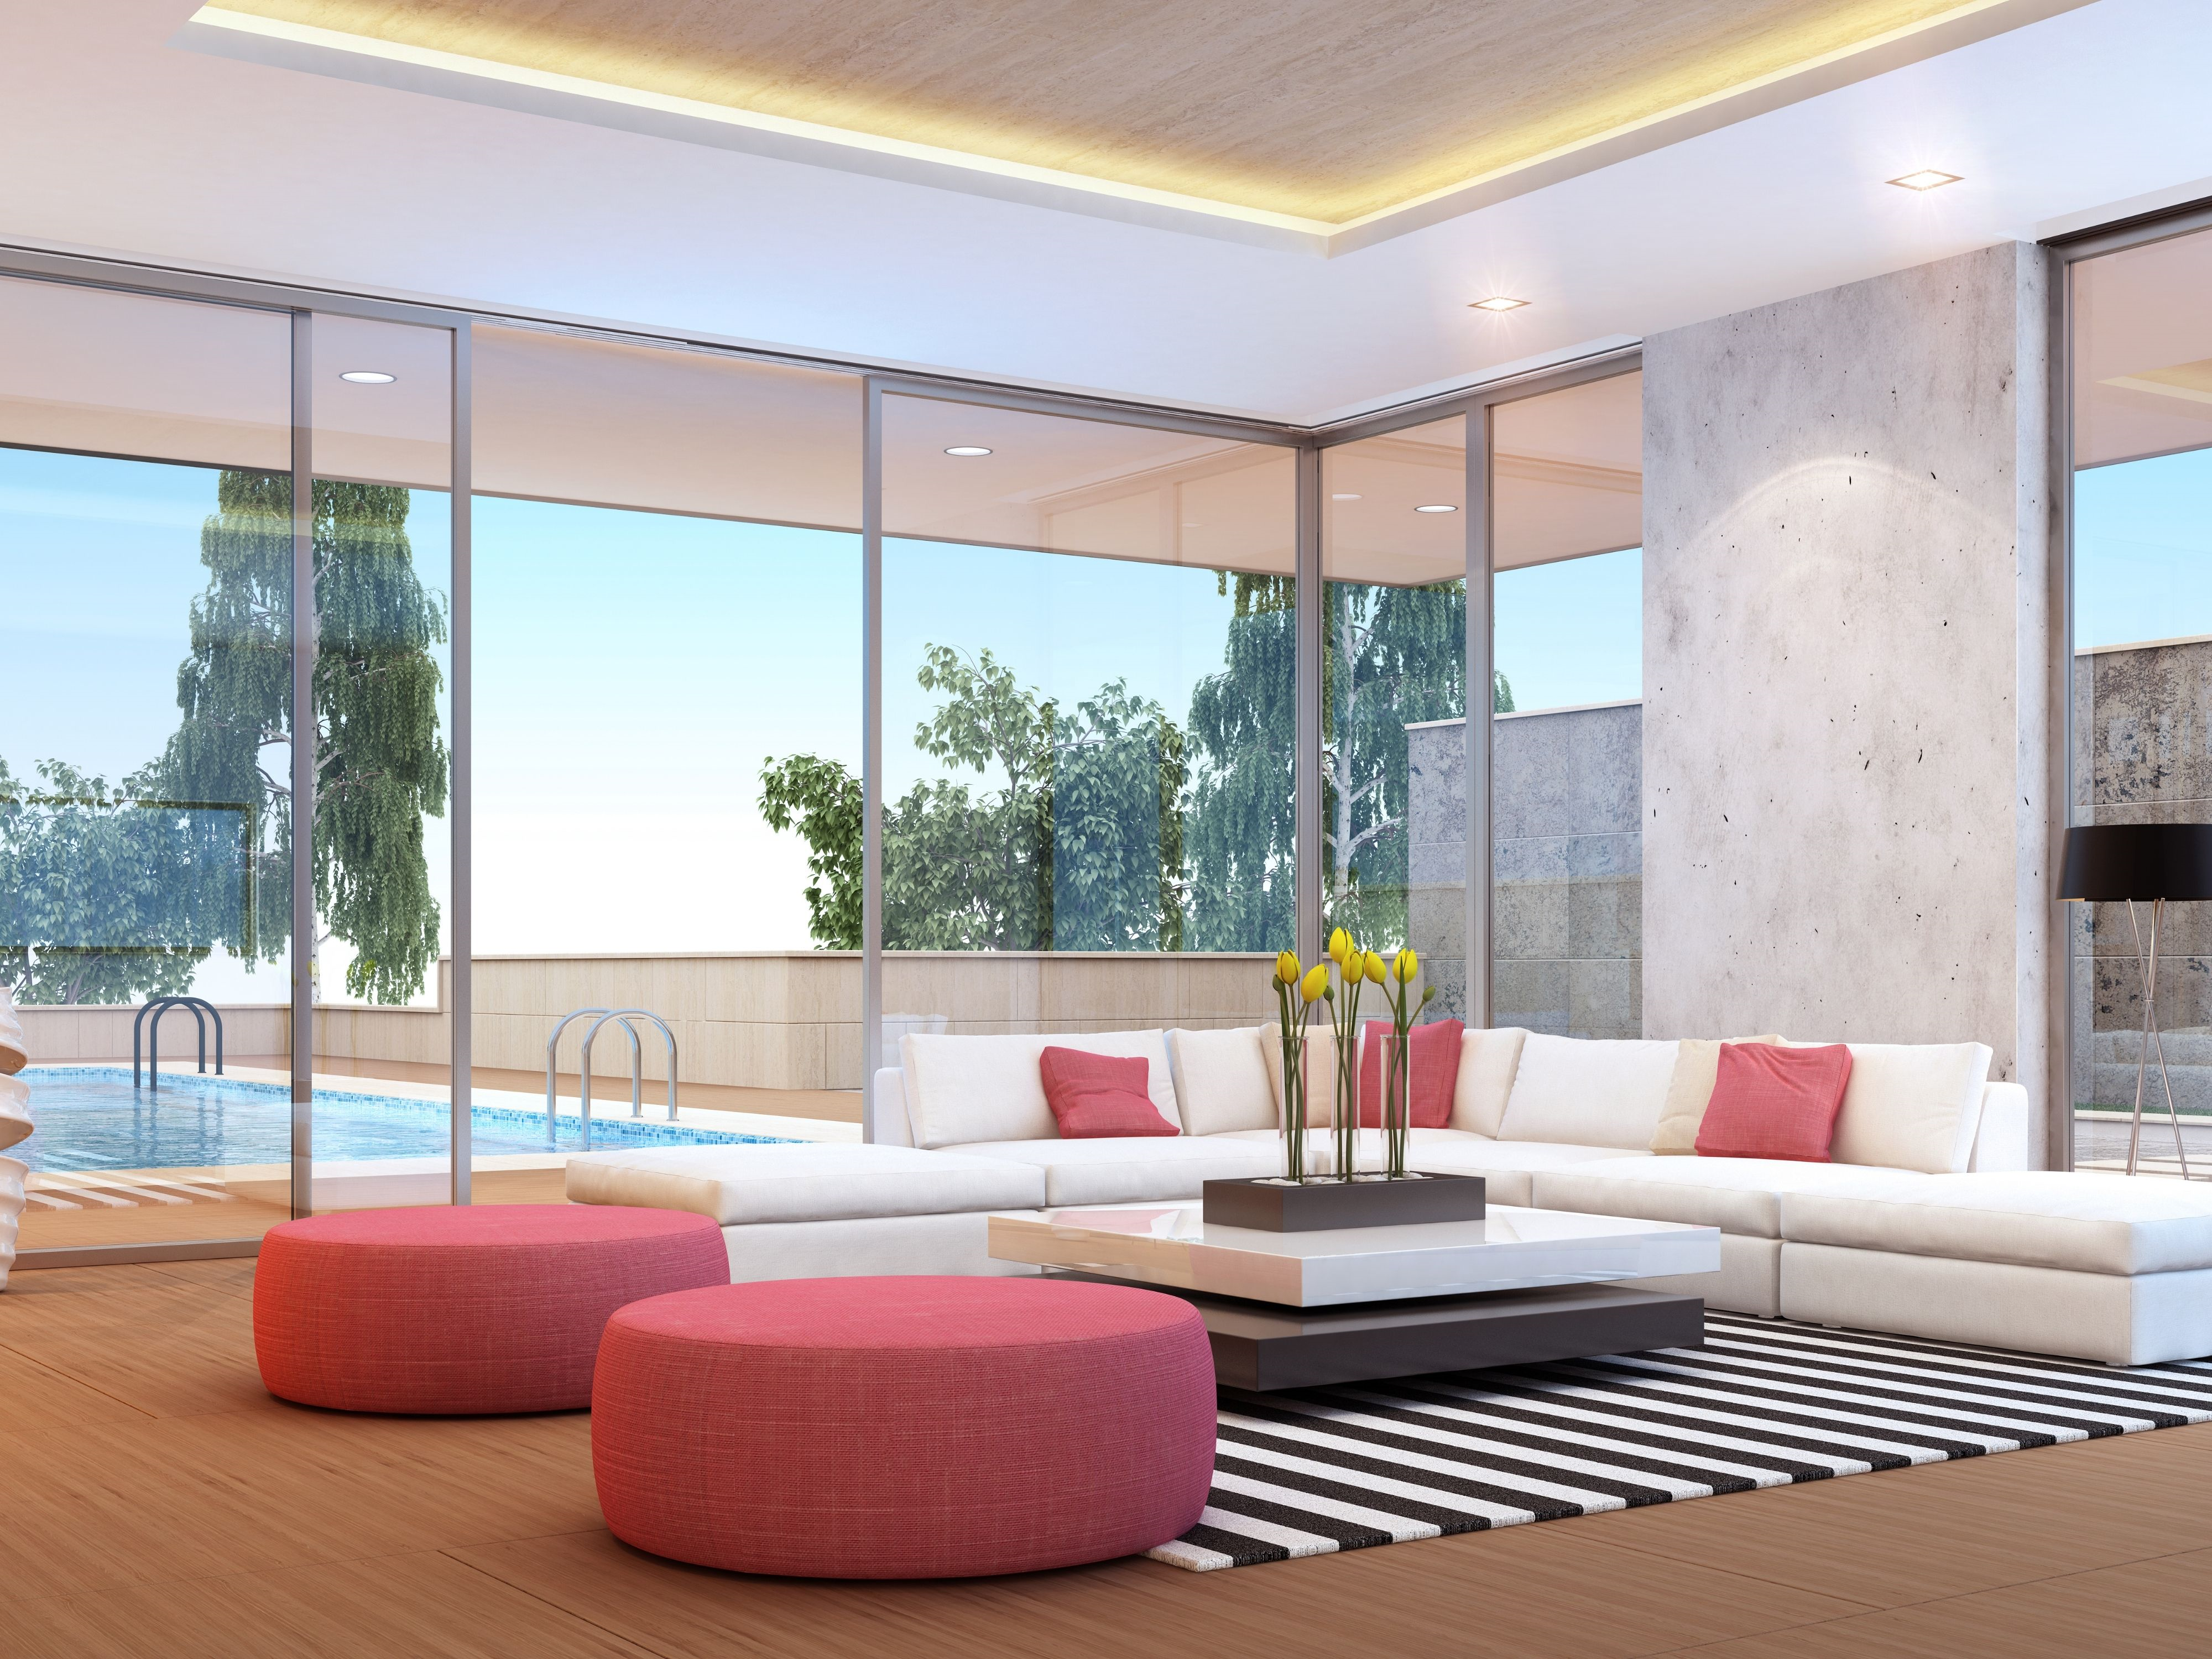 Minimalist villa living room interior design
